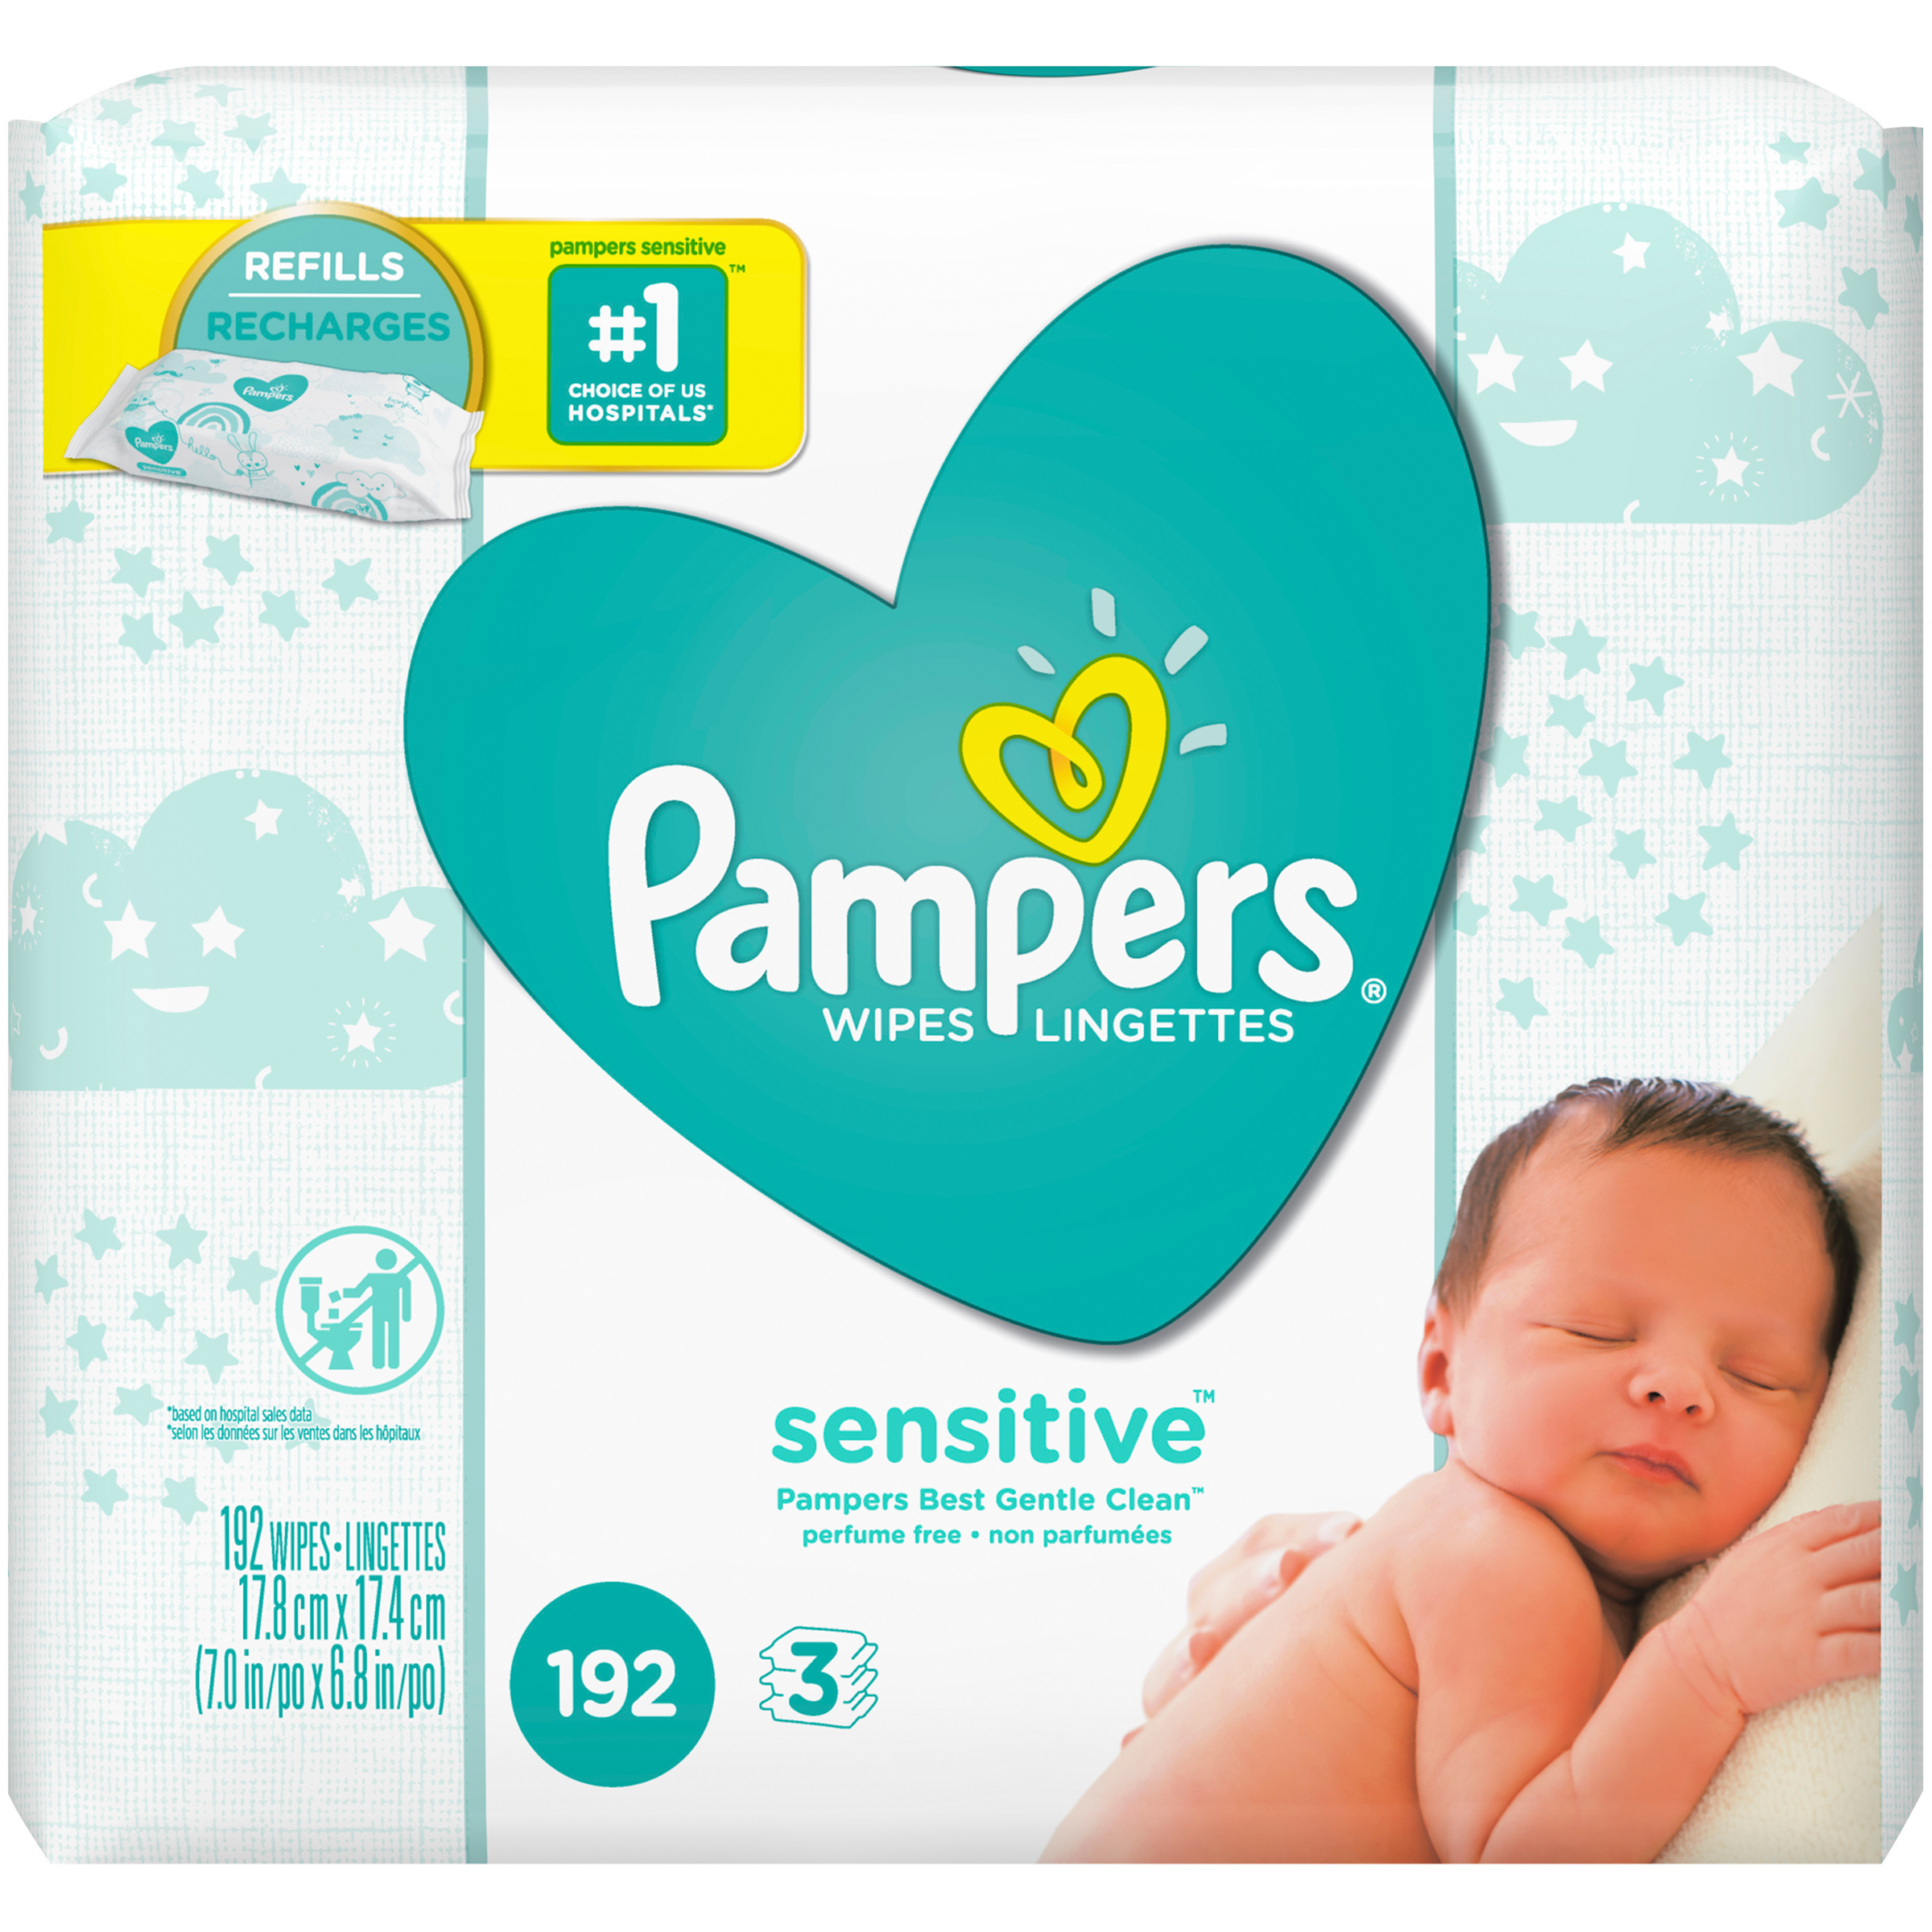 Lingettes Pampers Sensitive - Pampers